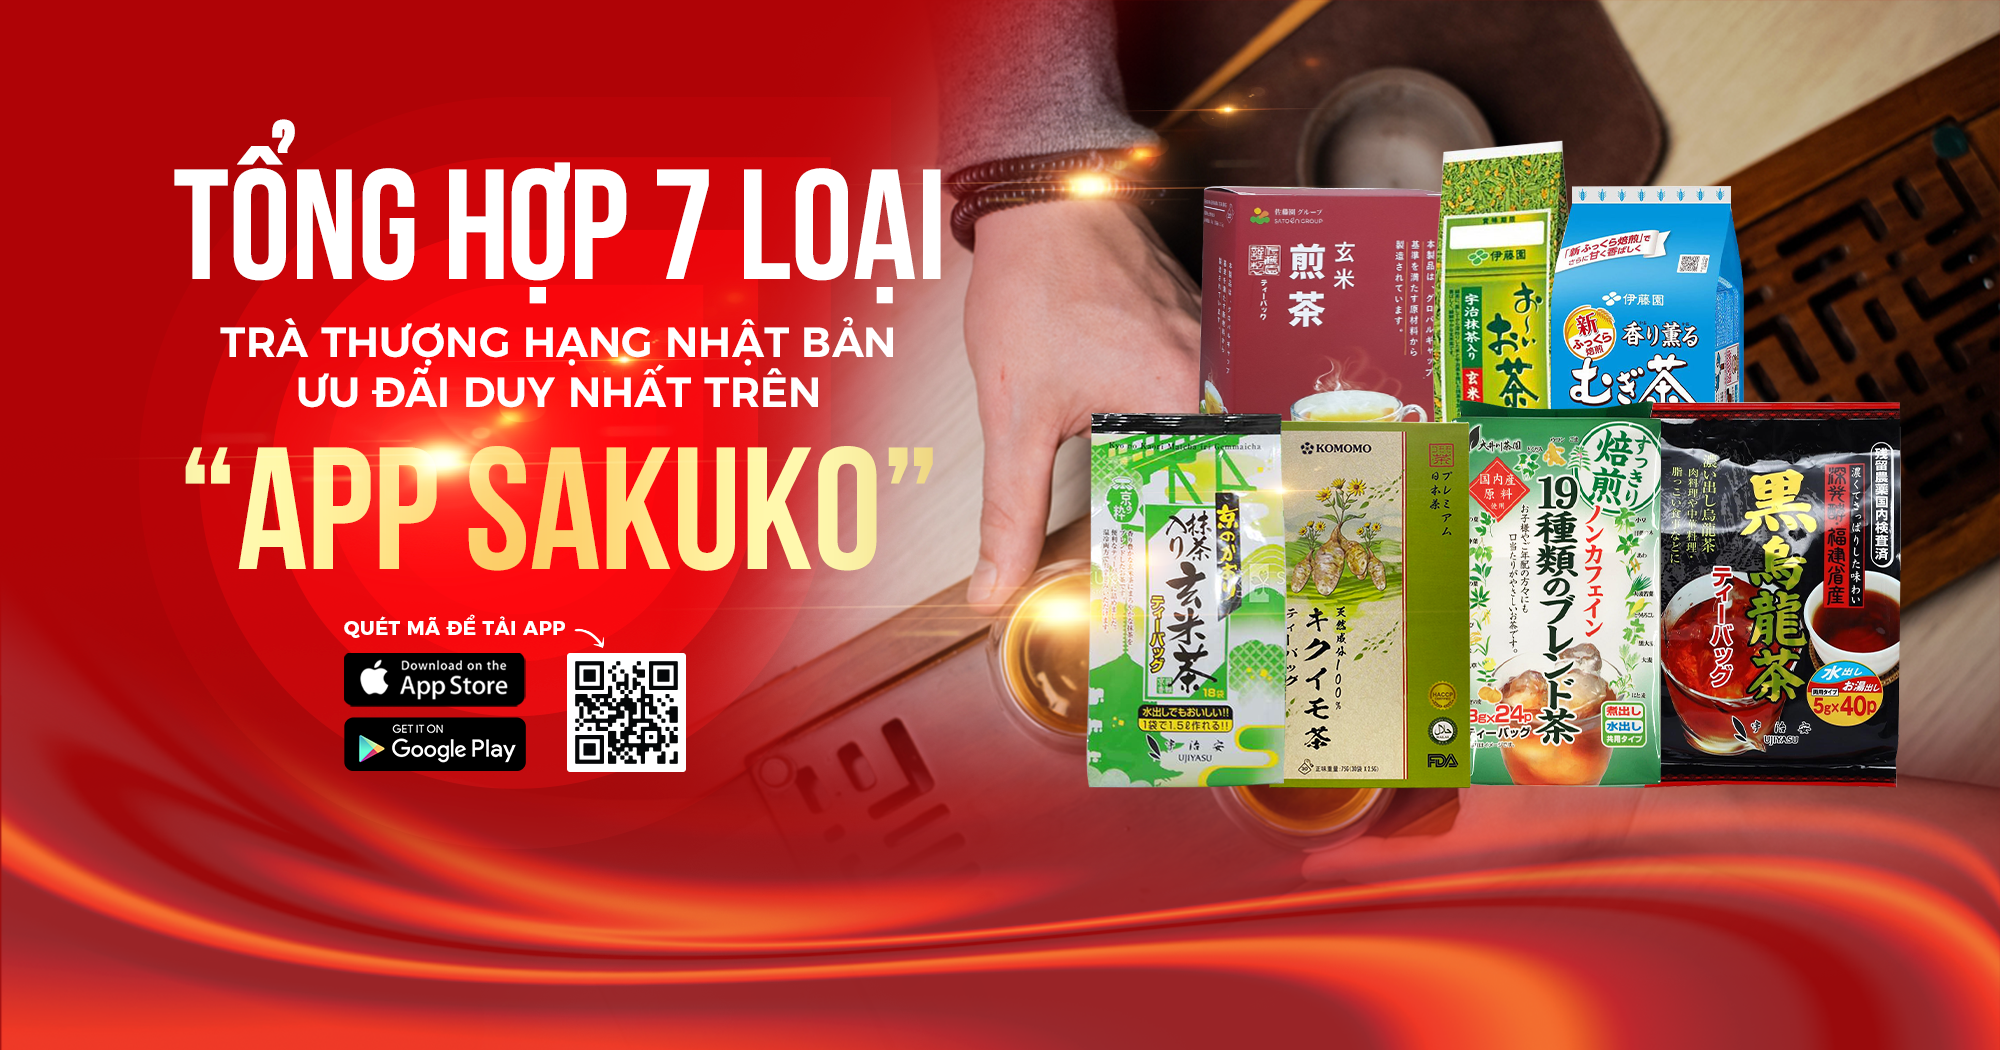 Tổng hợp 7 loại trà thượng hạng Nhật Bản ưu đãi duy nhất trên App Sakuko